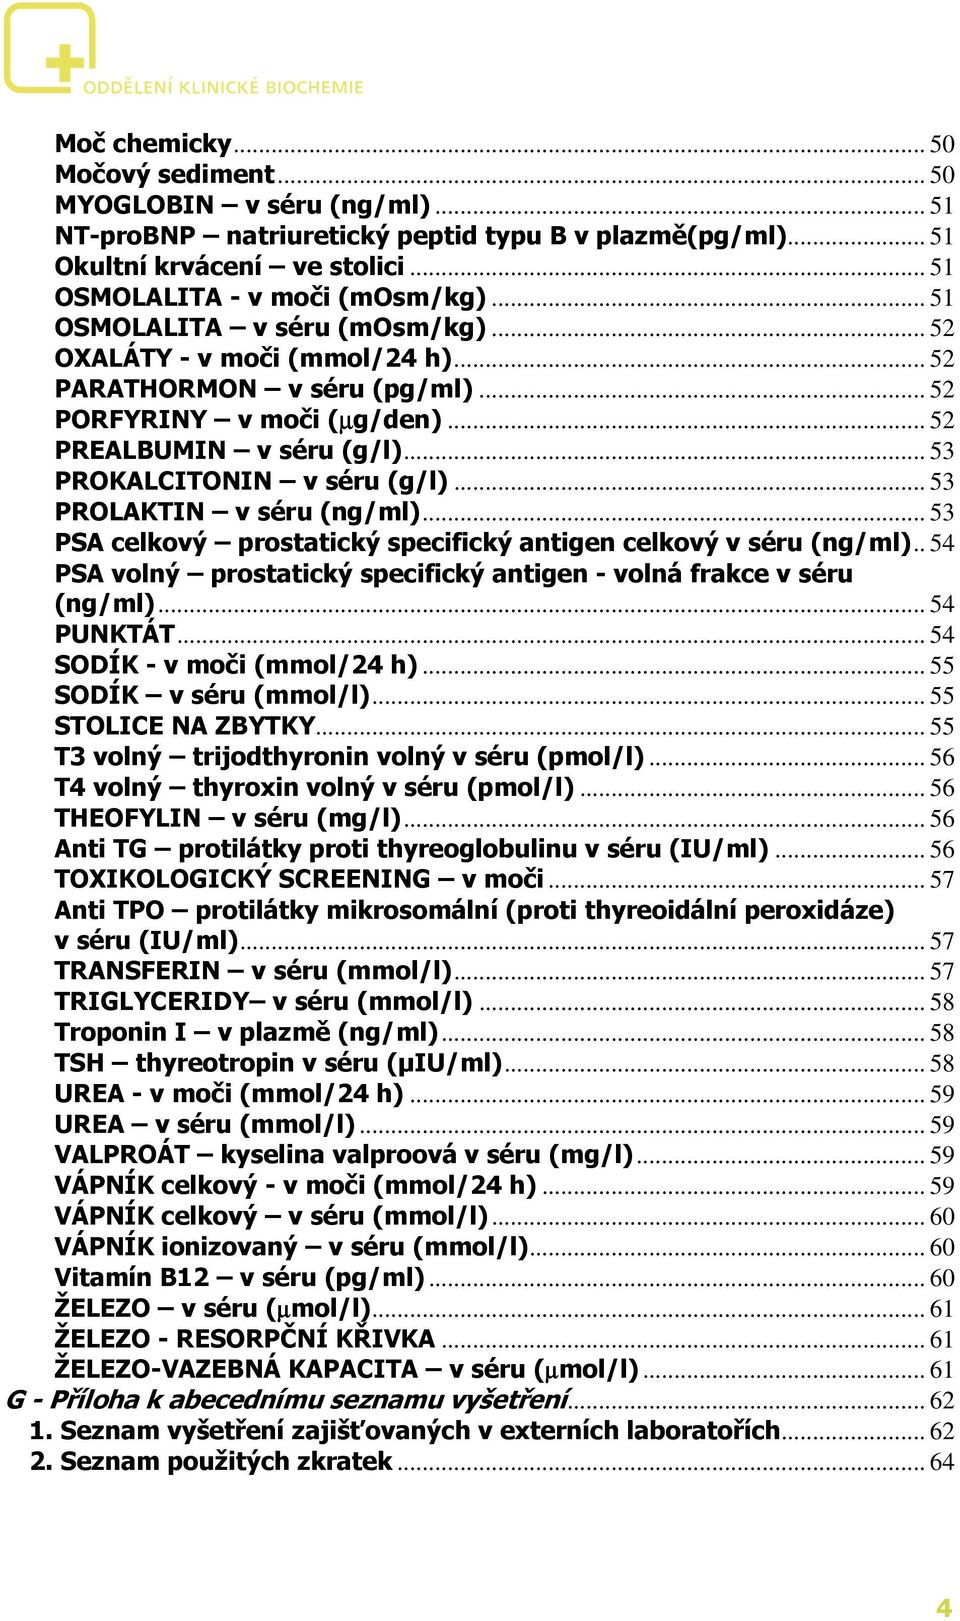 .. 53 PROLAKTIN v séru (ng/ml)... 53 PSA celkový prostatický specifický antigen celkový v séru (ng/ml).. 54 PSA volný prostatický specifický antigen - volná frakce v séru (ng/ml)... 54 PUNKTÁT.